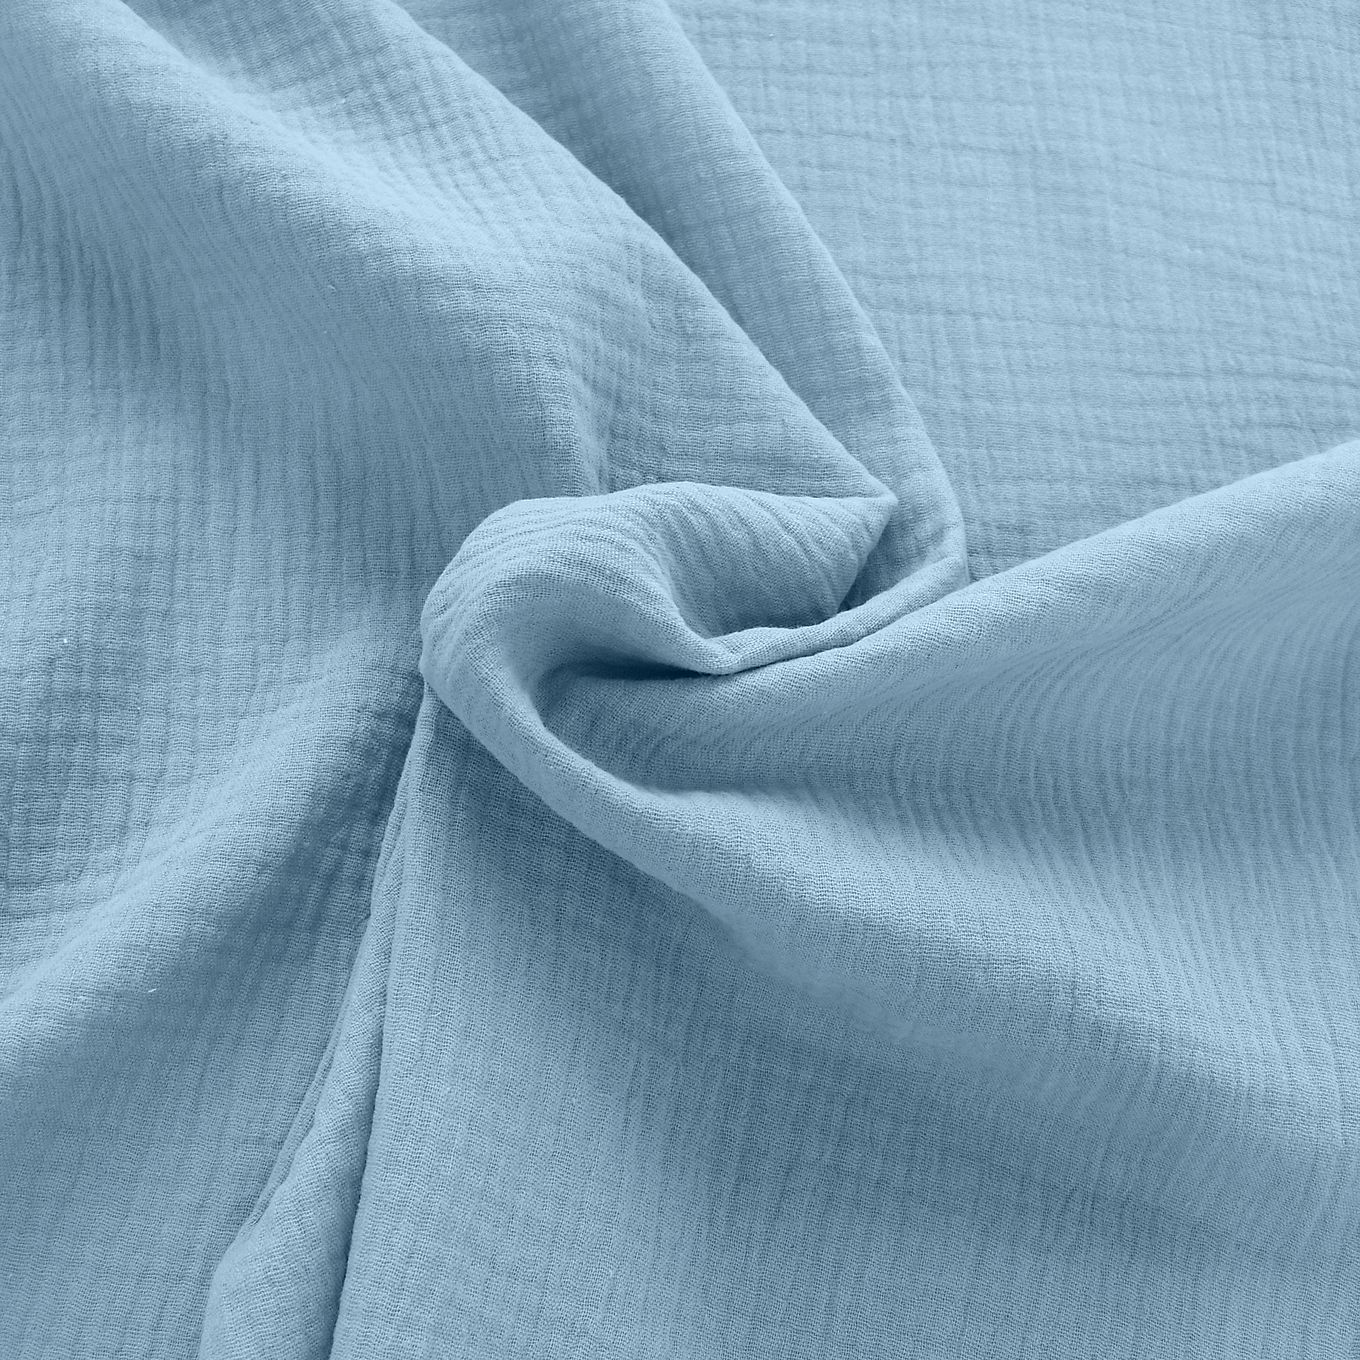 hell blauer Musselin/Gauze weicher Baumwollstoff zweilagig Kleider-Blusenstoff